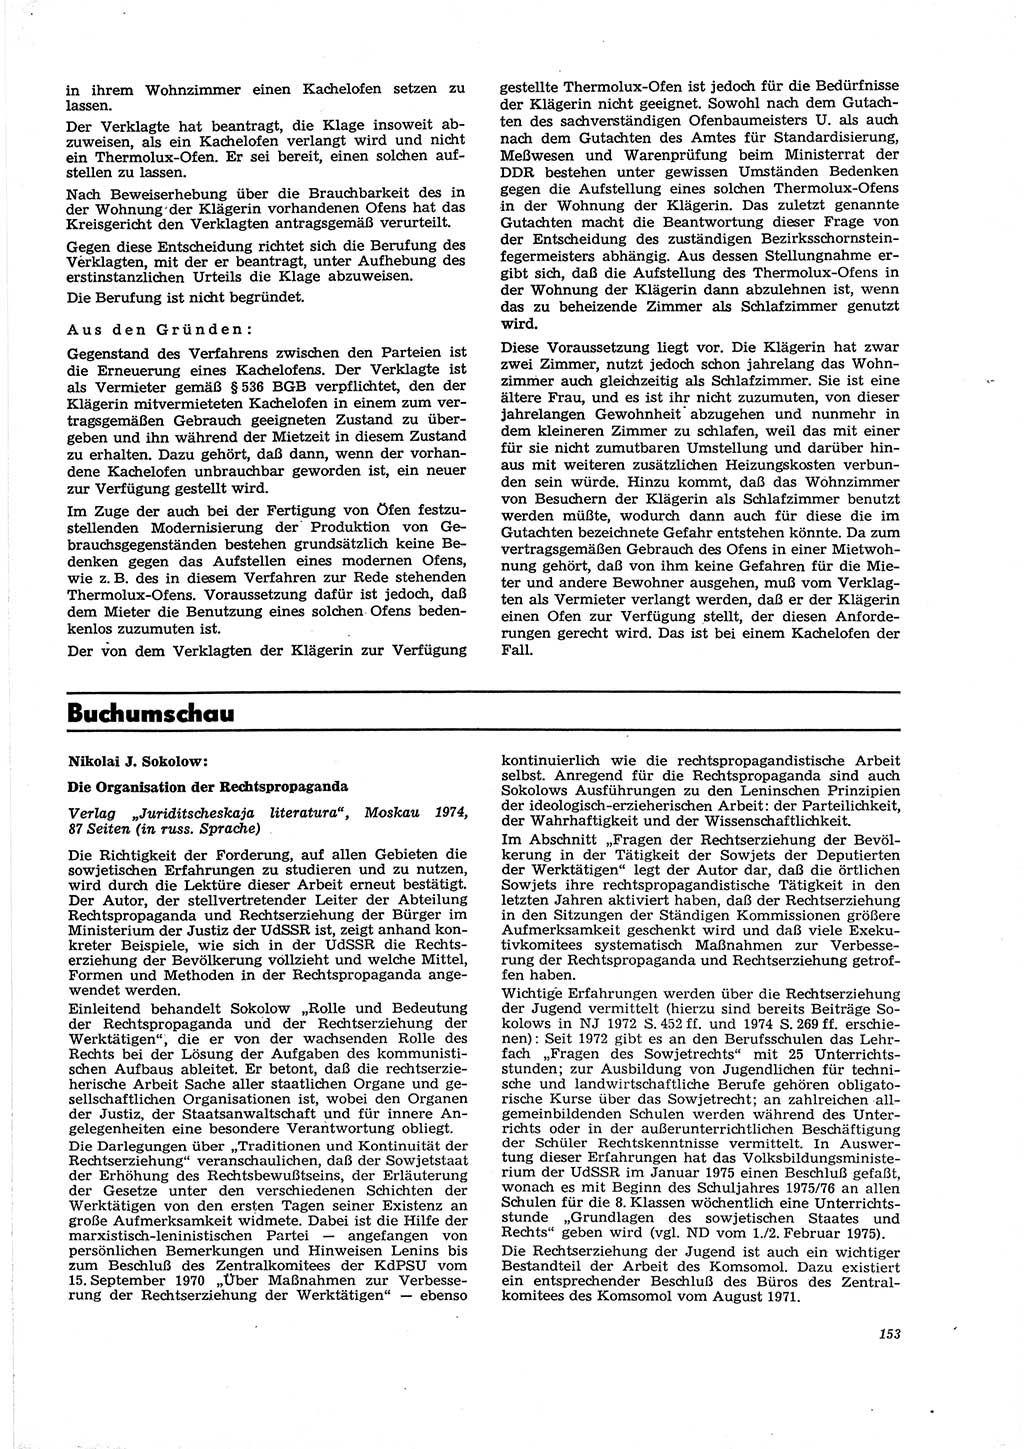 Neue Justiz (NJ), Zeitschrift für Recht und Rechtswissenschaft [Deutsche Demokratische Republik (DDR)], 29. Jahrgang 1975, Seite 153 (NJ DDR 1975, S. 153)